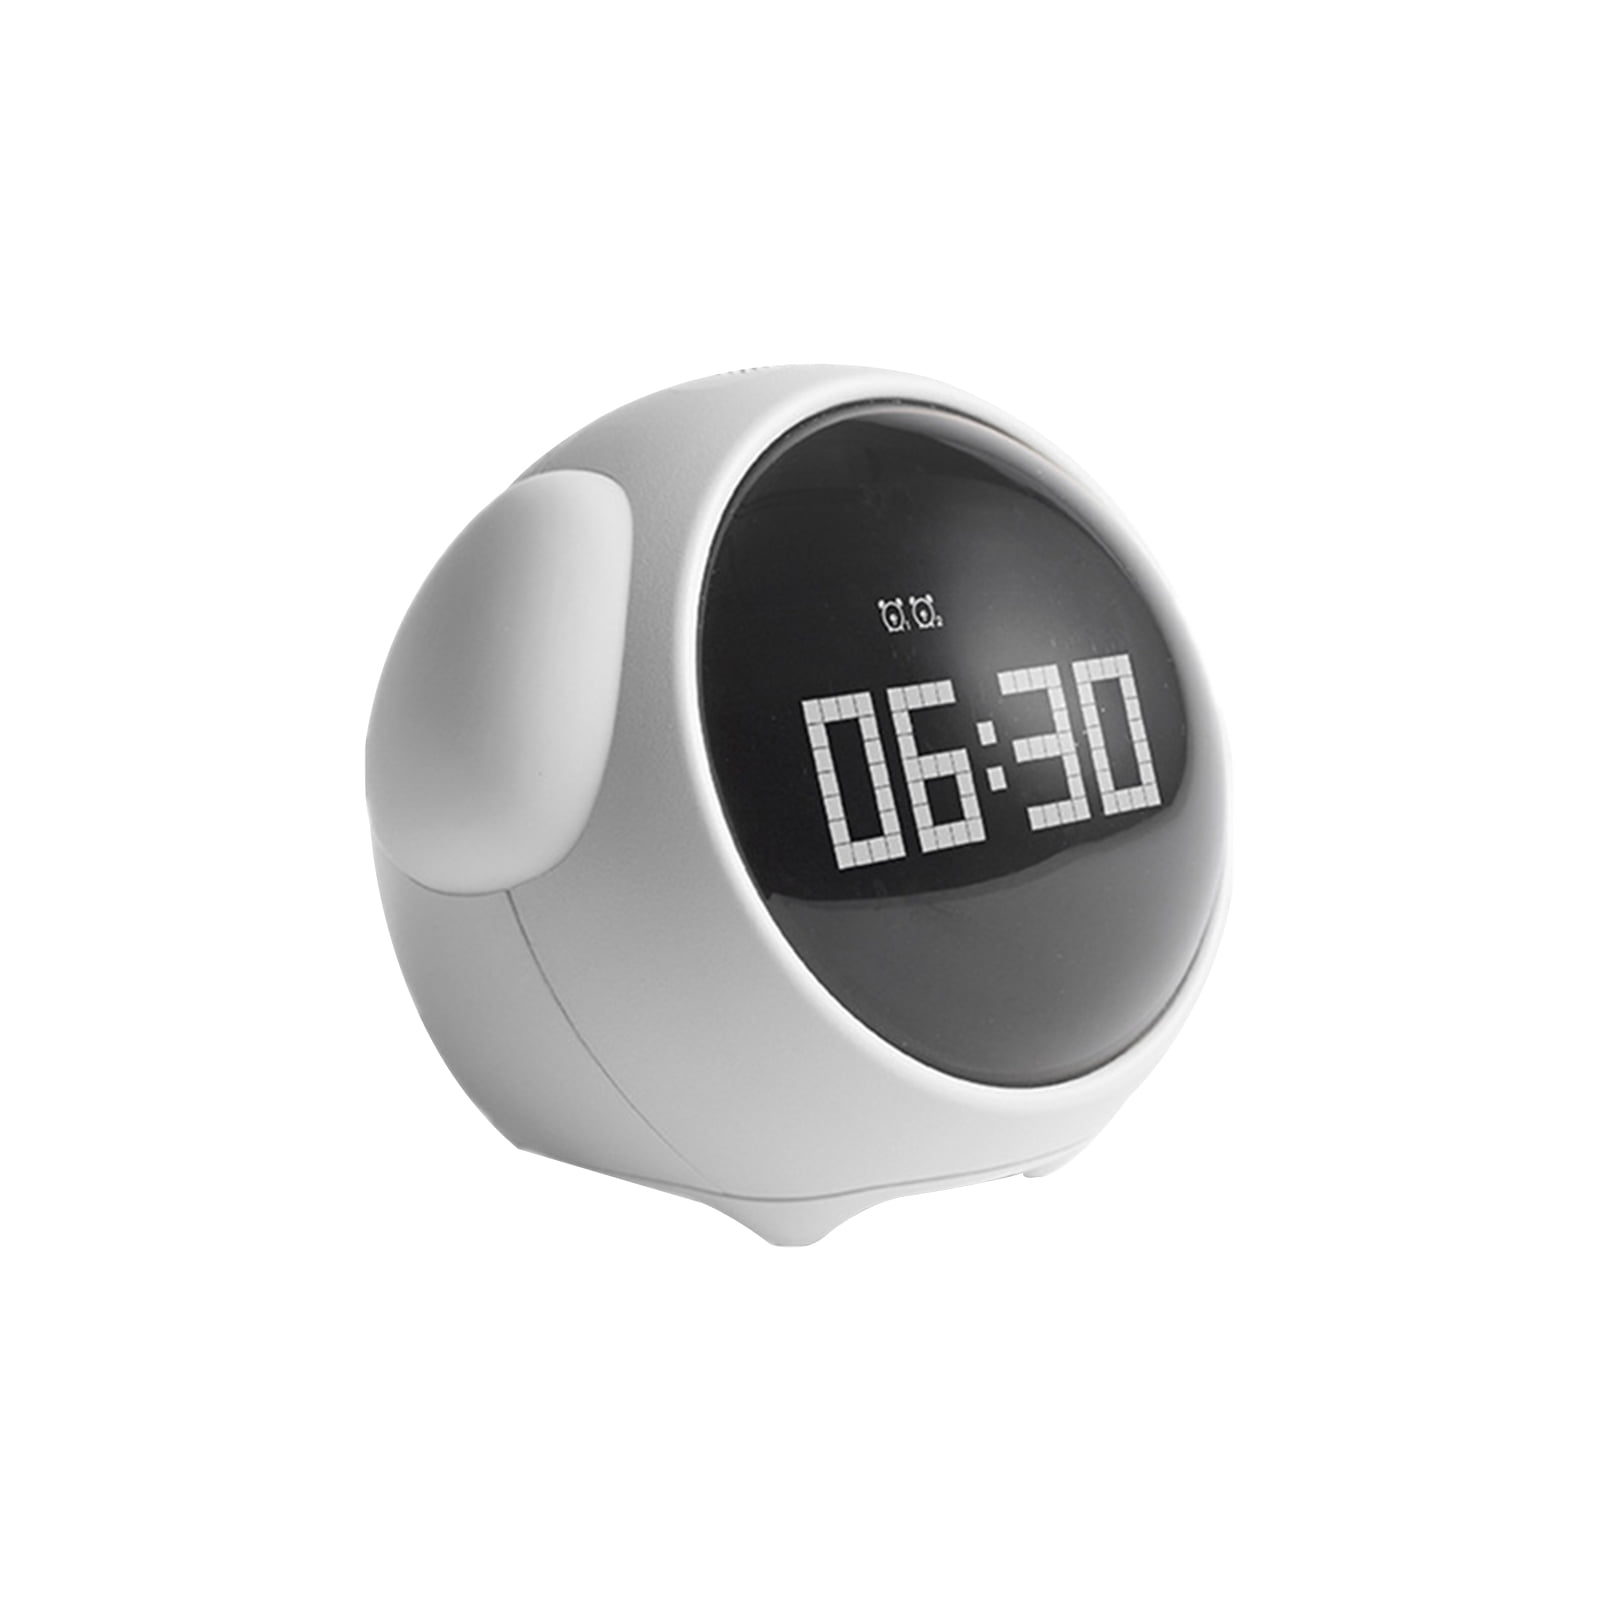 Часы будильник xiaomi. Часы будильник Xiaomi Smart Alarm. Умный будильник Xiaomi cute expression Alarm Clock,. Xiaomi Youpin часы будильник. Цифровой будильник Youpin Xiaomi.